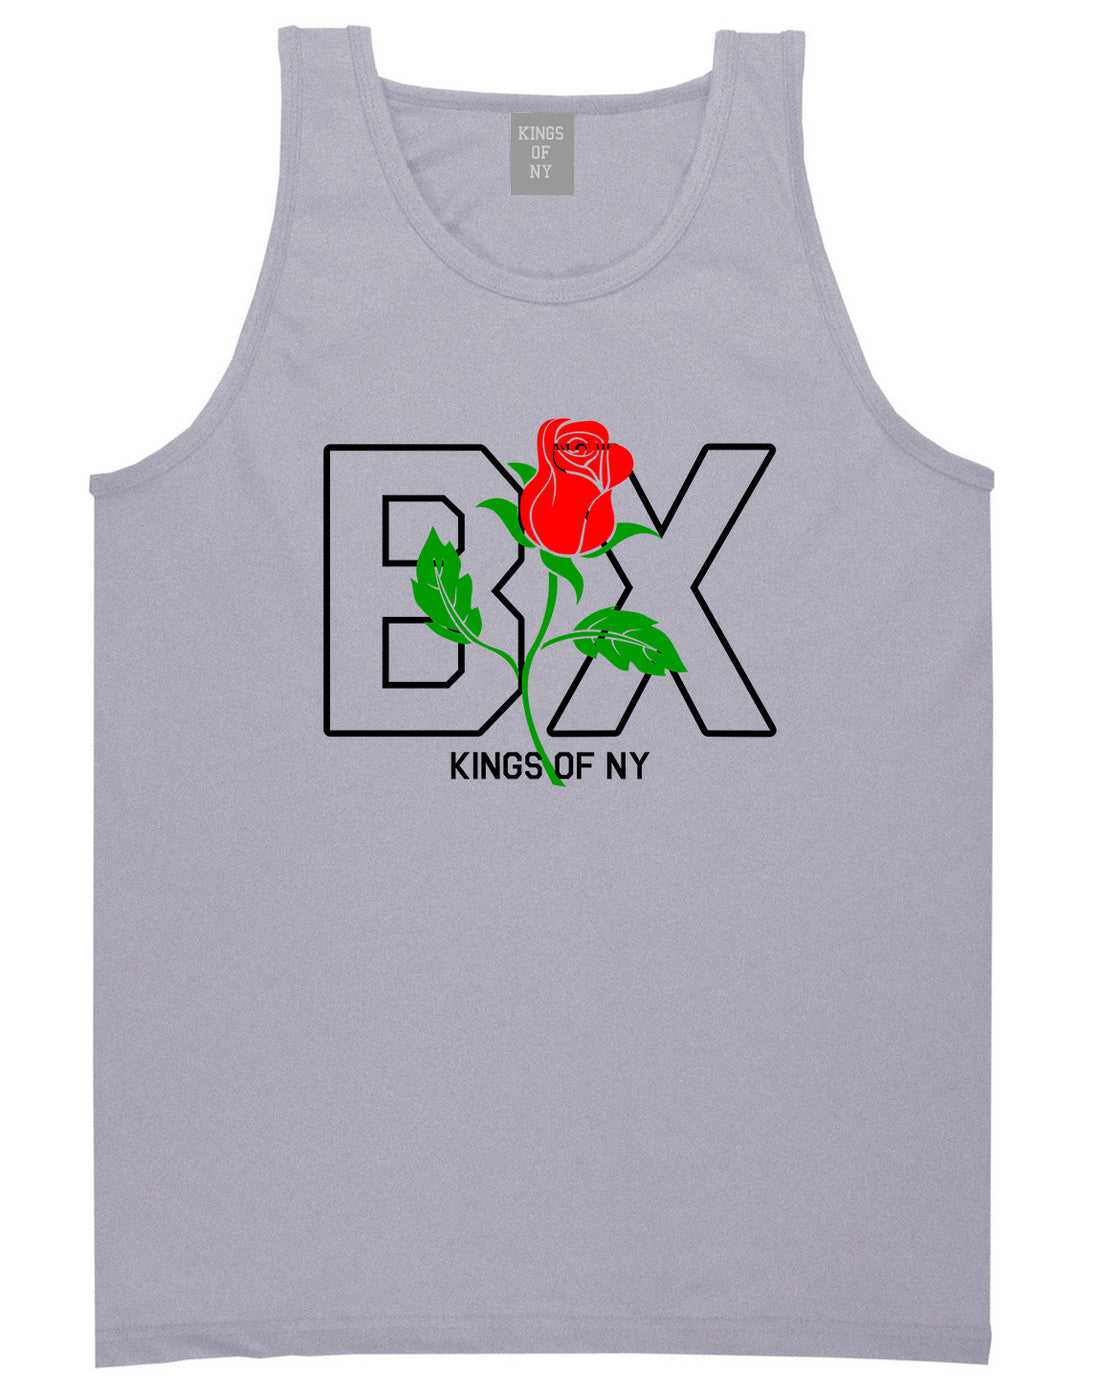 Rose BX The Bronx Kings Of NY Mens Tank Top T-Shirt Grey